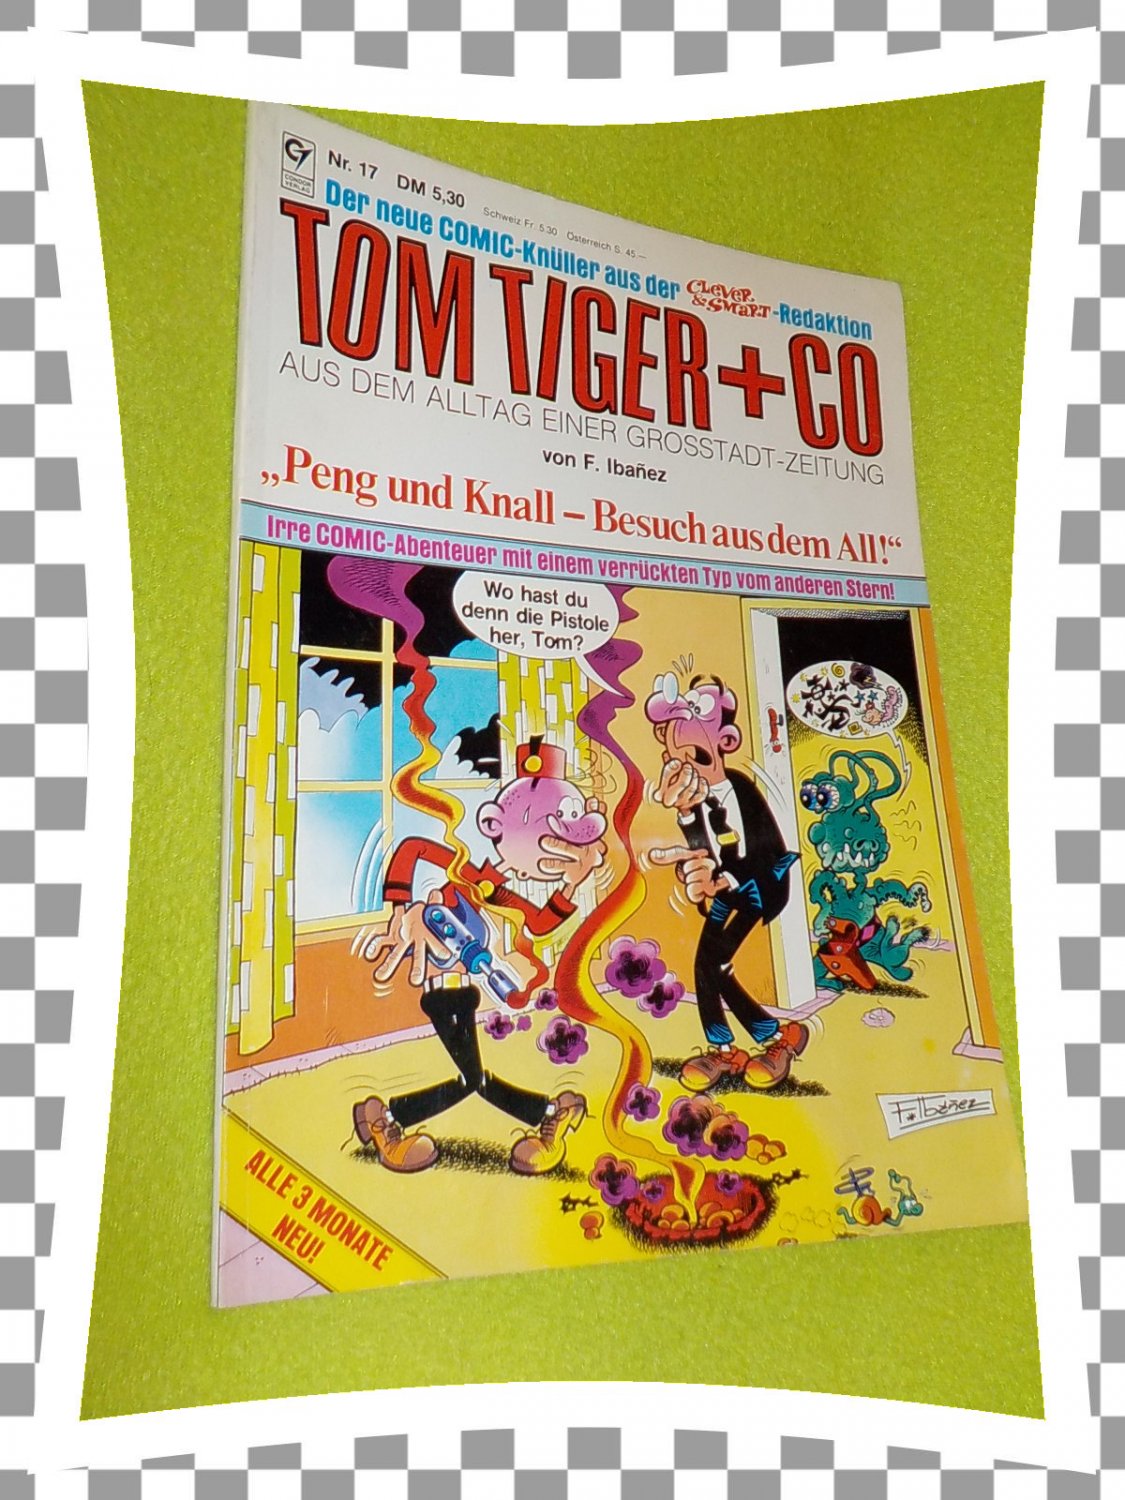 TOM TIGER + Co. Aus dem Alltag einer Grossstadt-Zeitung. Nr. 10. aus der  Clever…